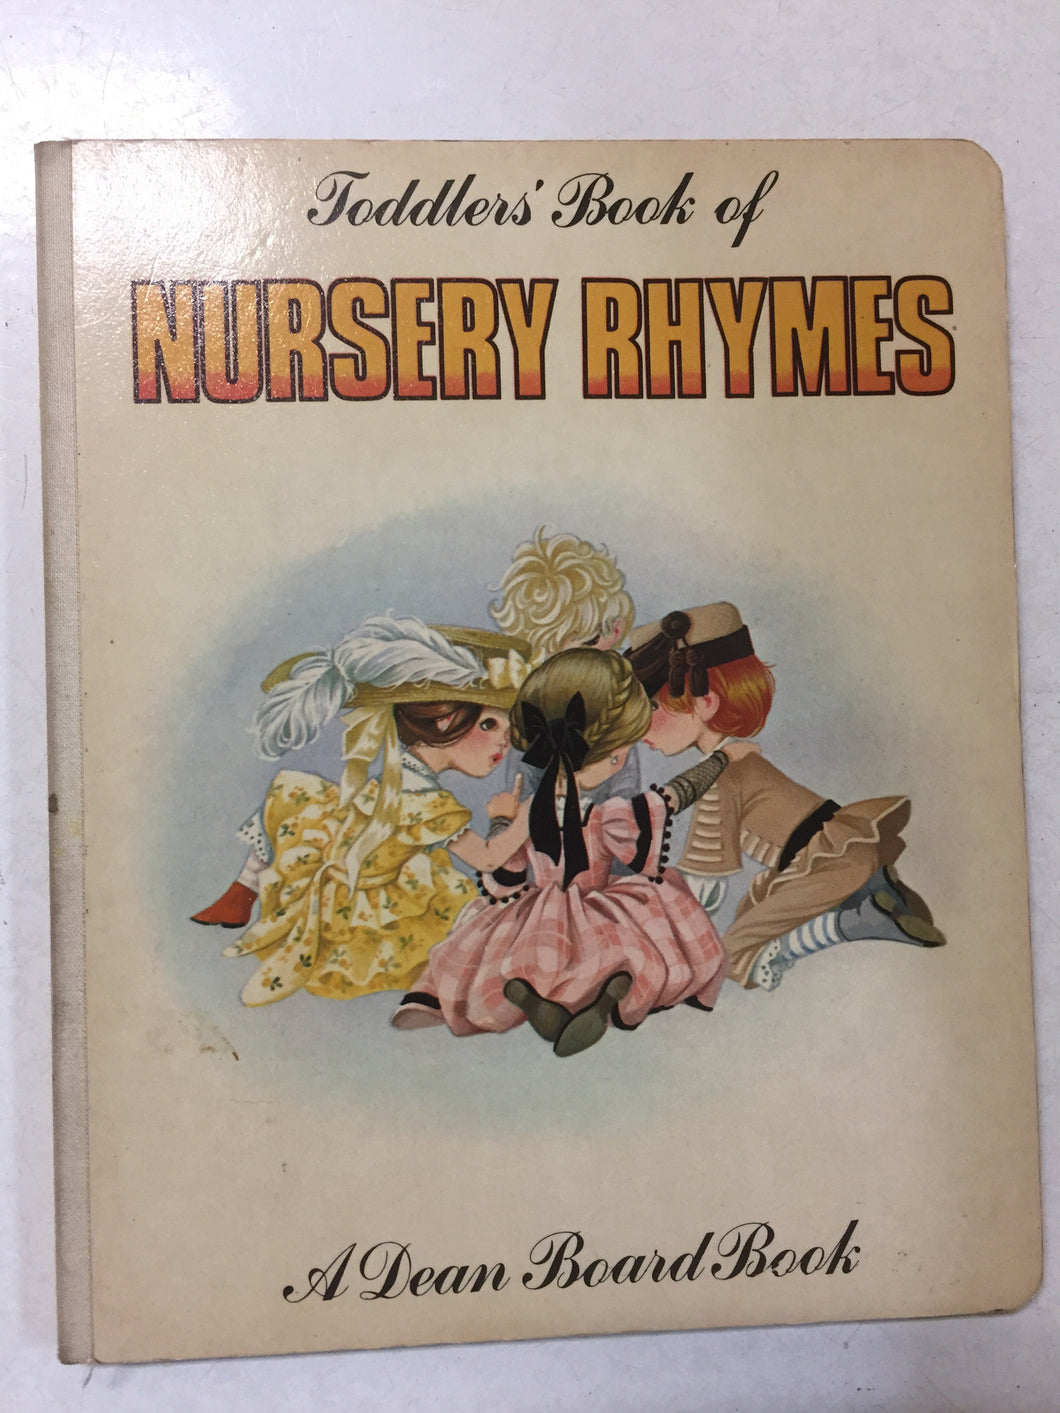 Toddlers' Book of Nursery Rhymes - Slickcatbooks